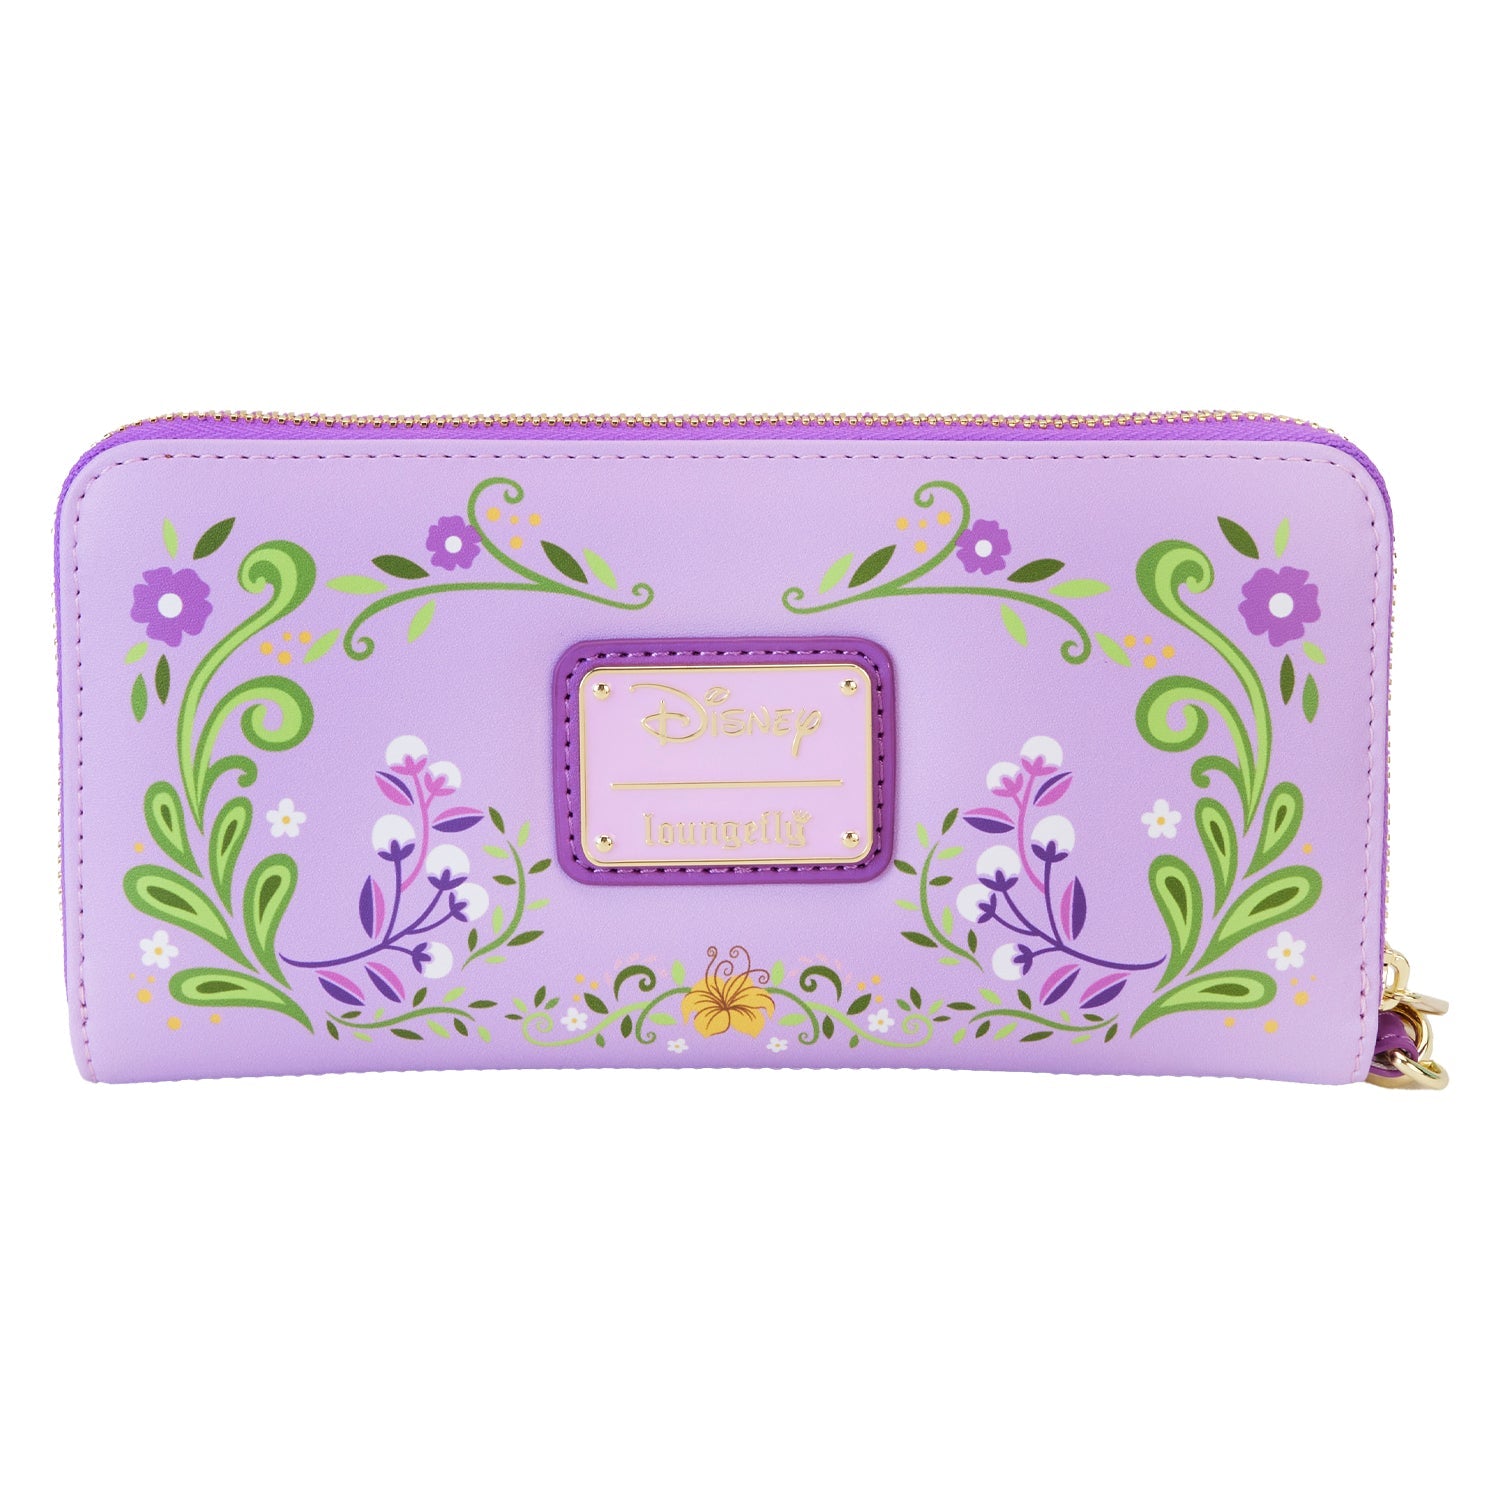 Loungefly x Disney Princess Rapunzel Lenticular Wristlet Wallet - GeekCore